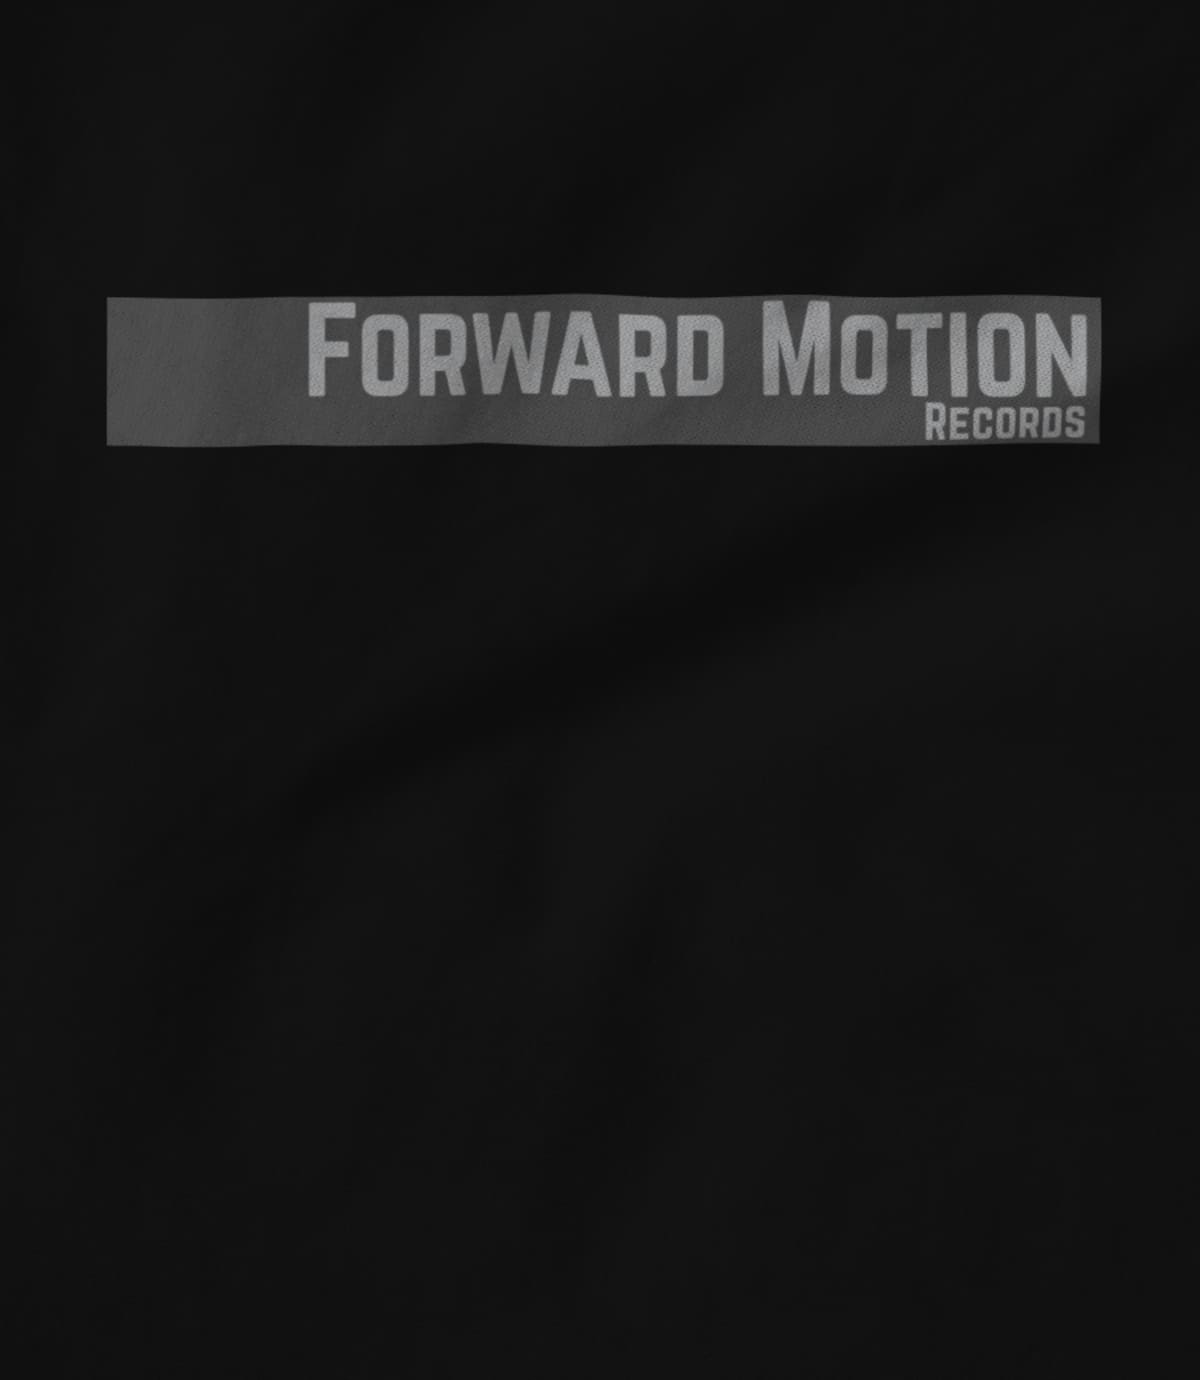 (Parollo Music) Forward Motion Records